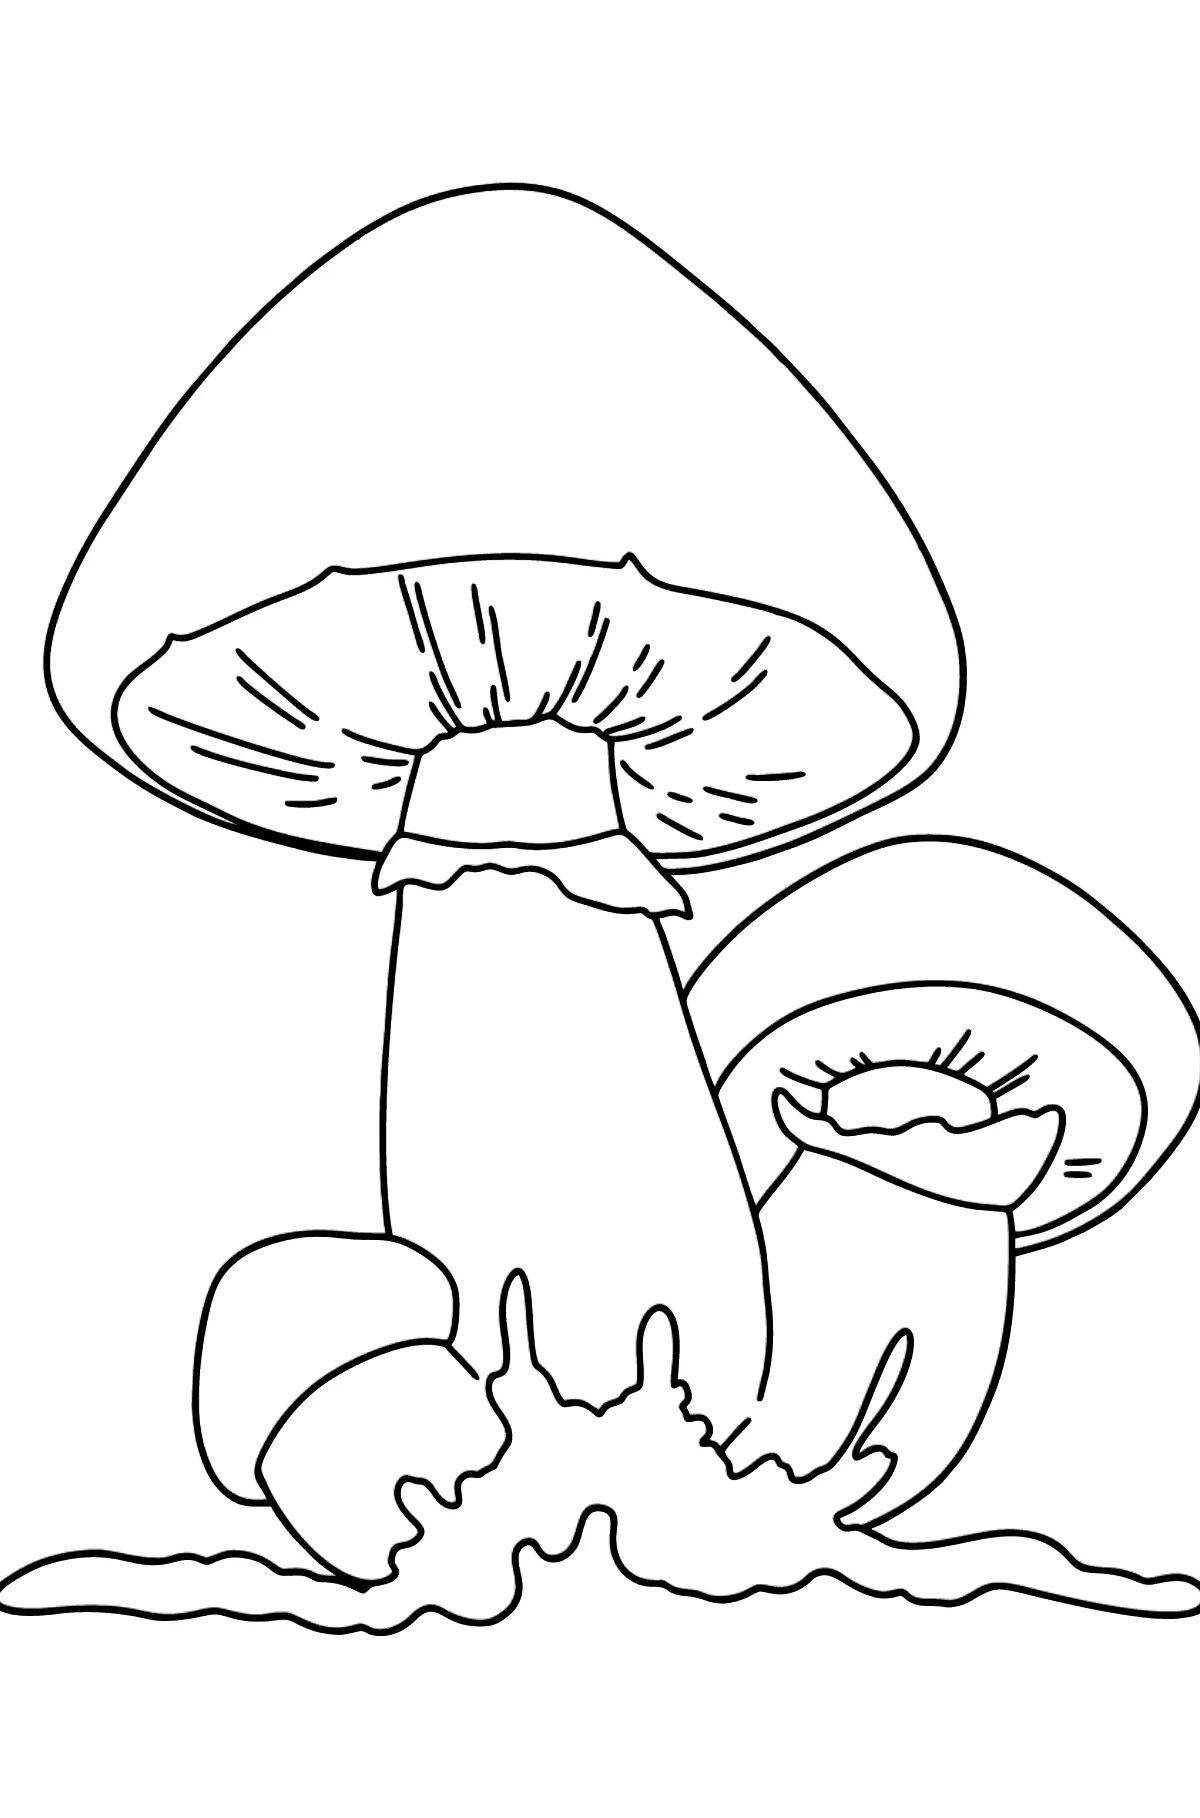 Cozy mushroom coloring book